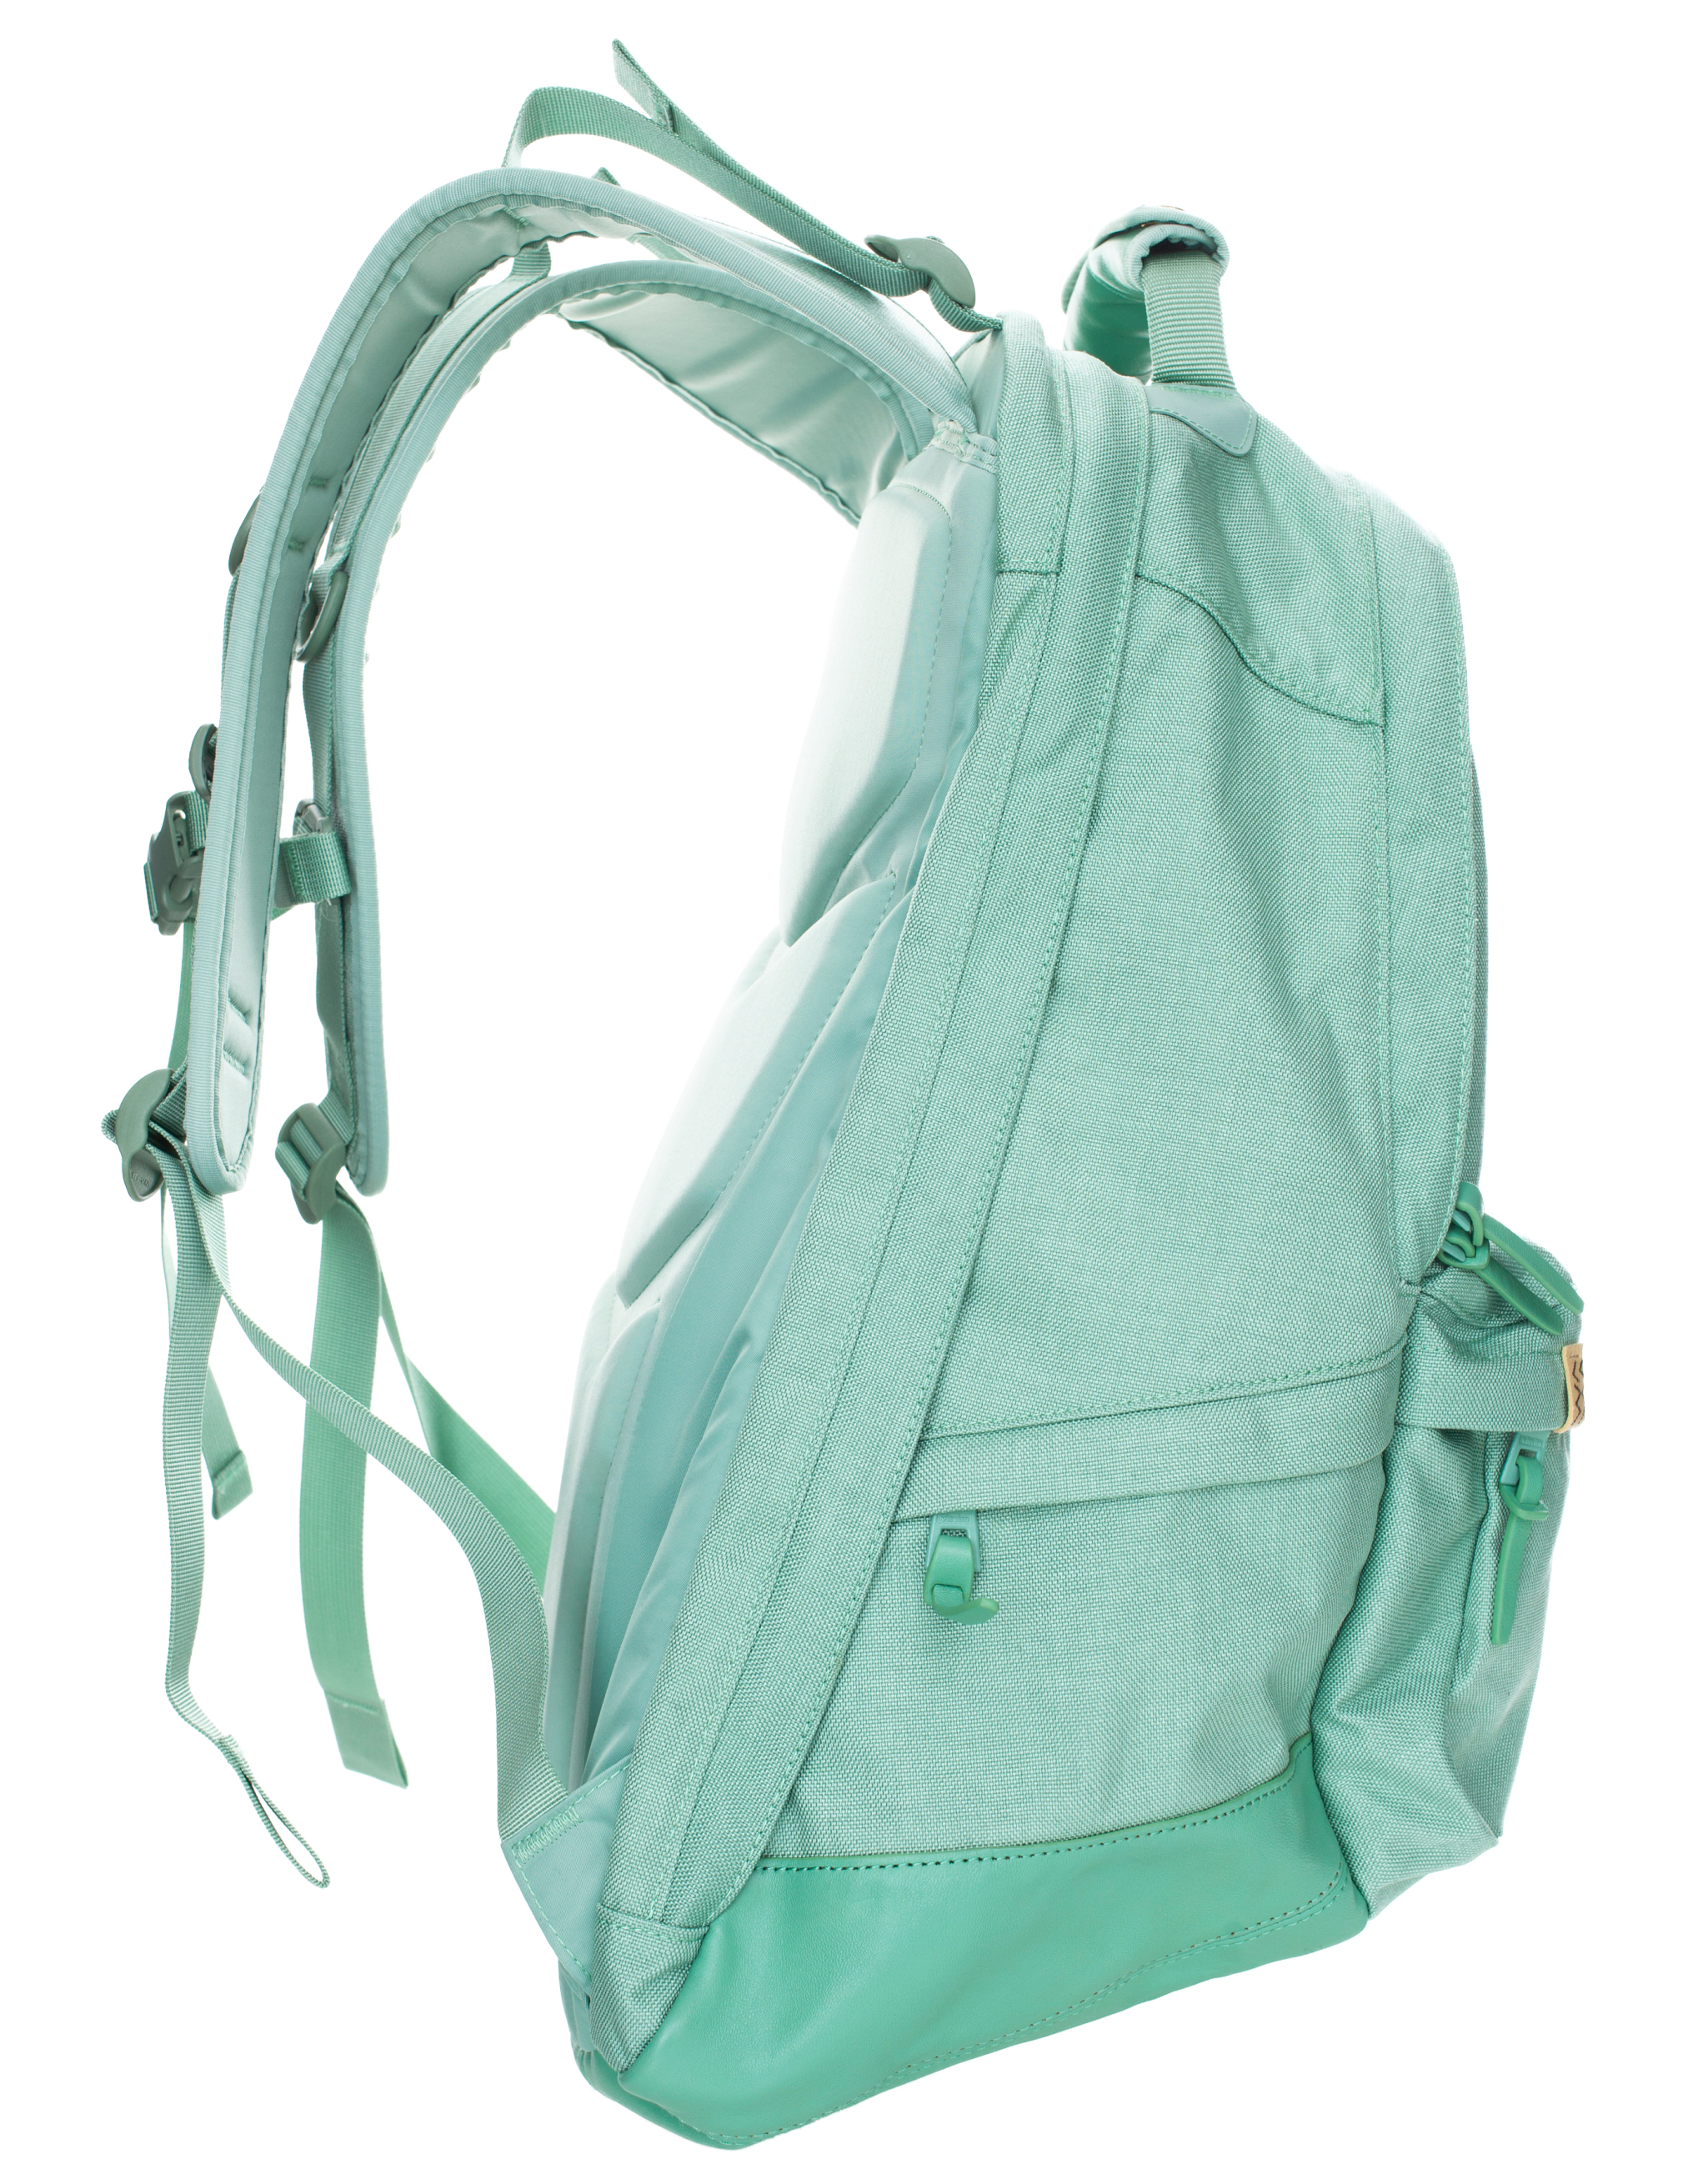 Рюкзак с кожаной отделкой visvim 0122203003028/ltgreen, размер One Size 0122203003028/ltgreen - фото 1